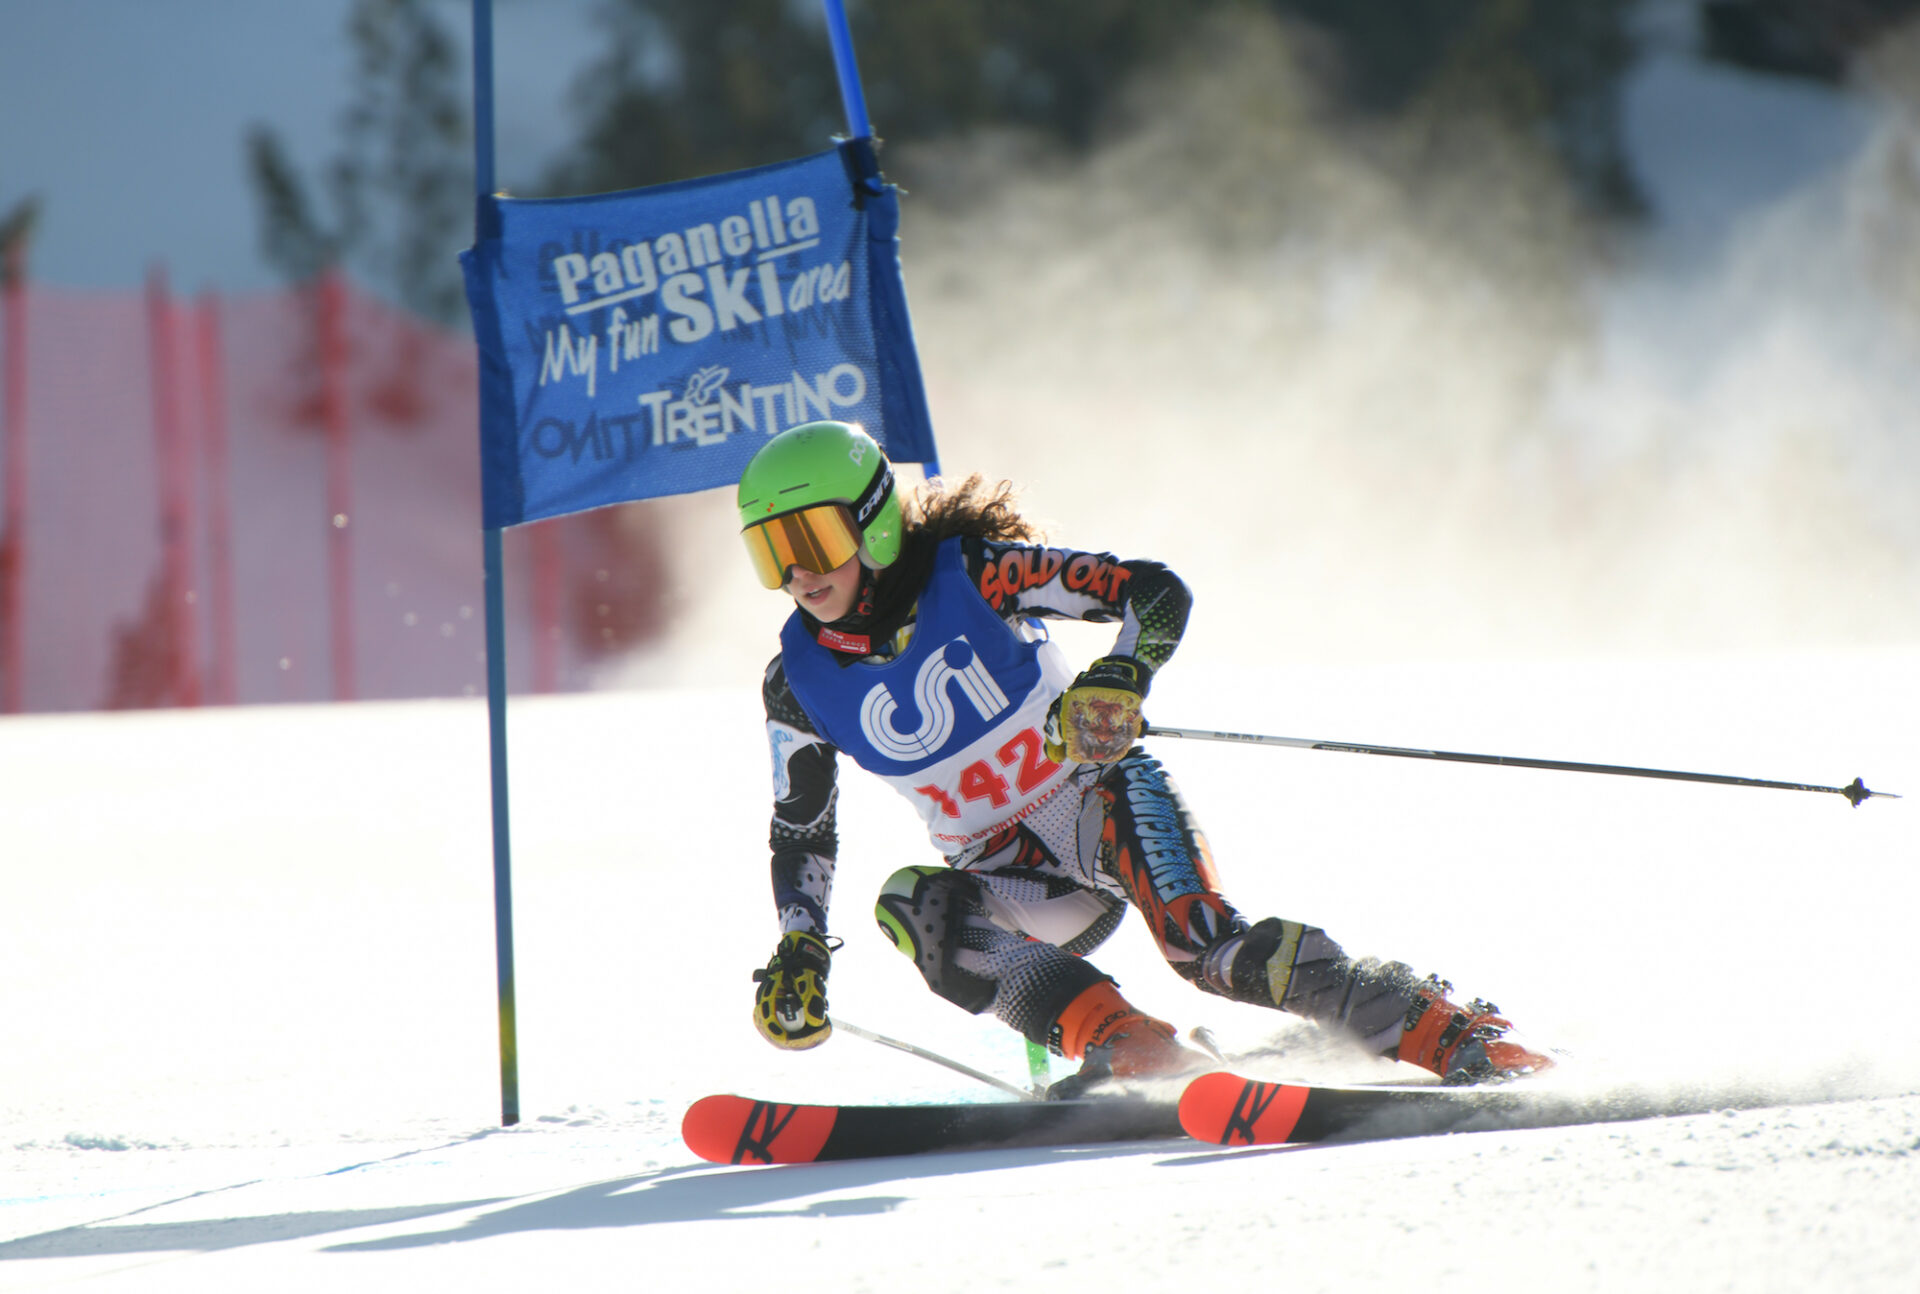 andalo (tn) 23° campionato nazionale csi di sci alpino. foto www.nex.ma